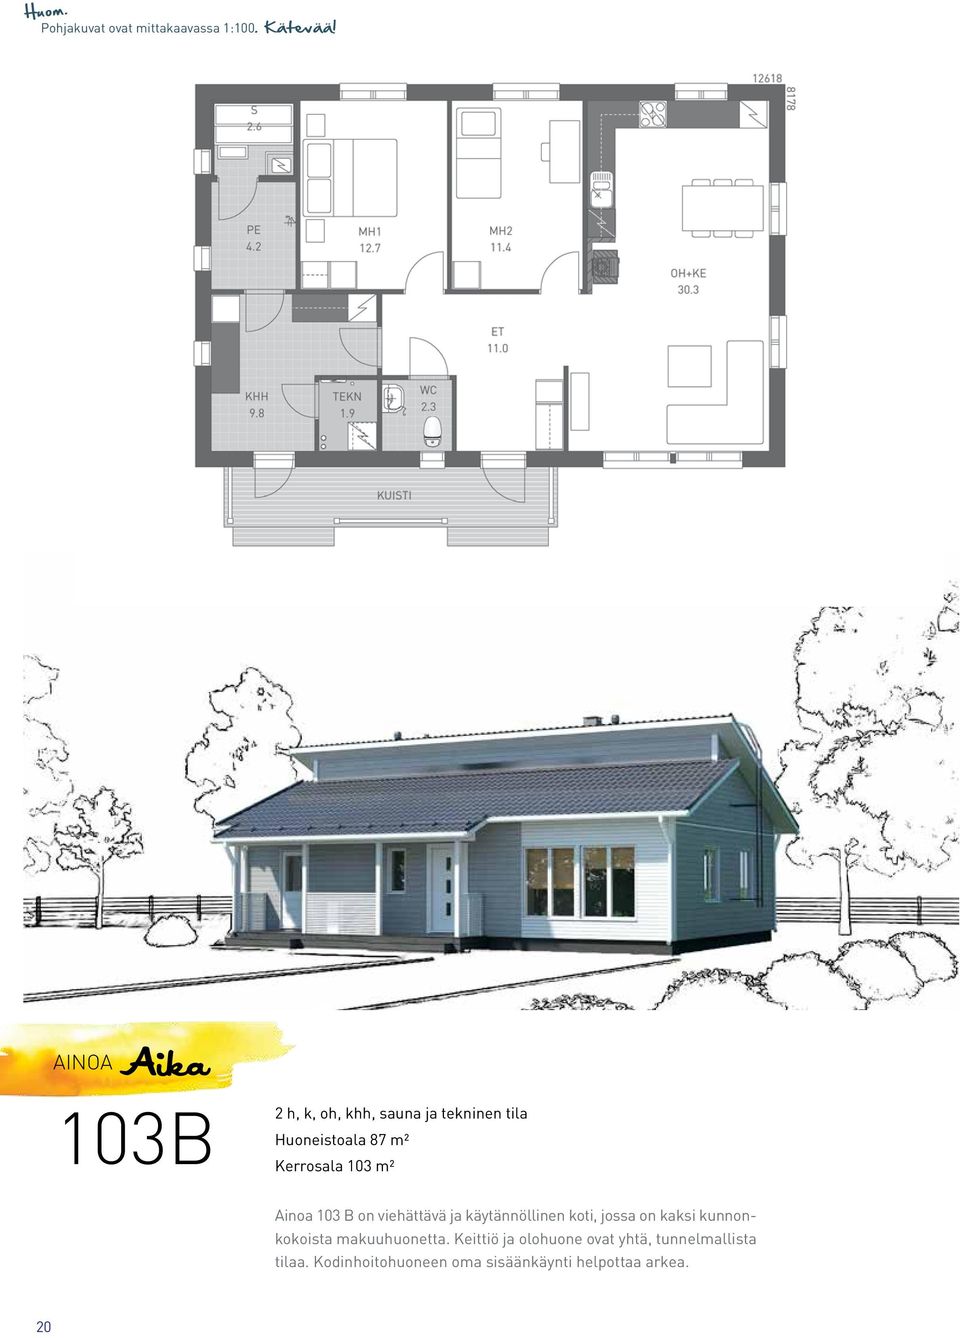 103 m² Ainoa 103 B on viehättävä ja käytännöllinen koti, jossa on kaksi kunnonkokoista